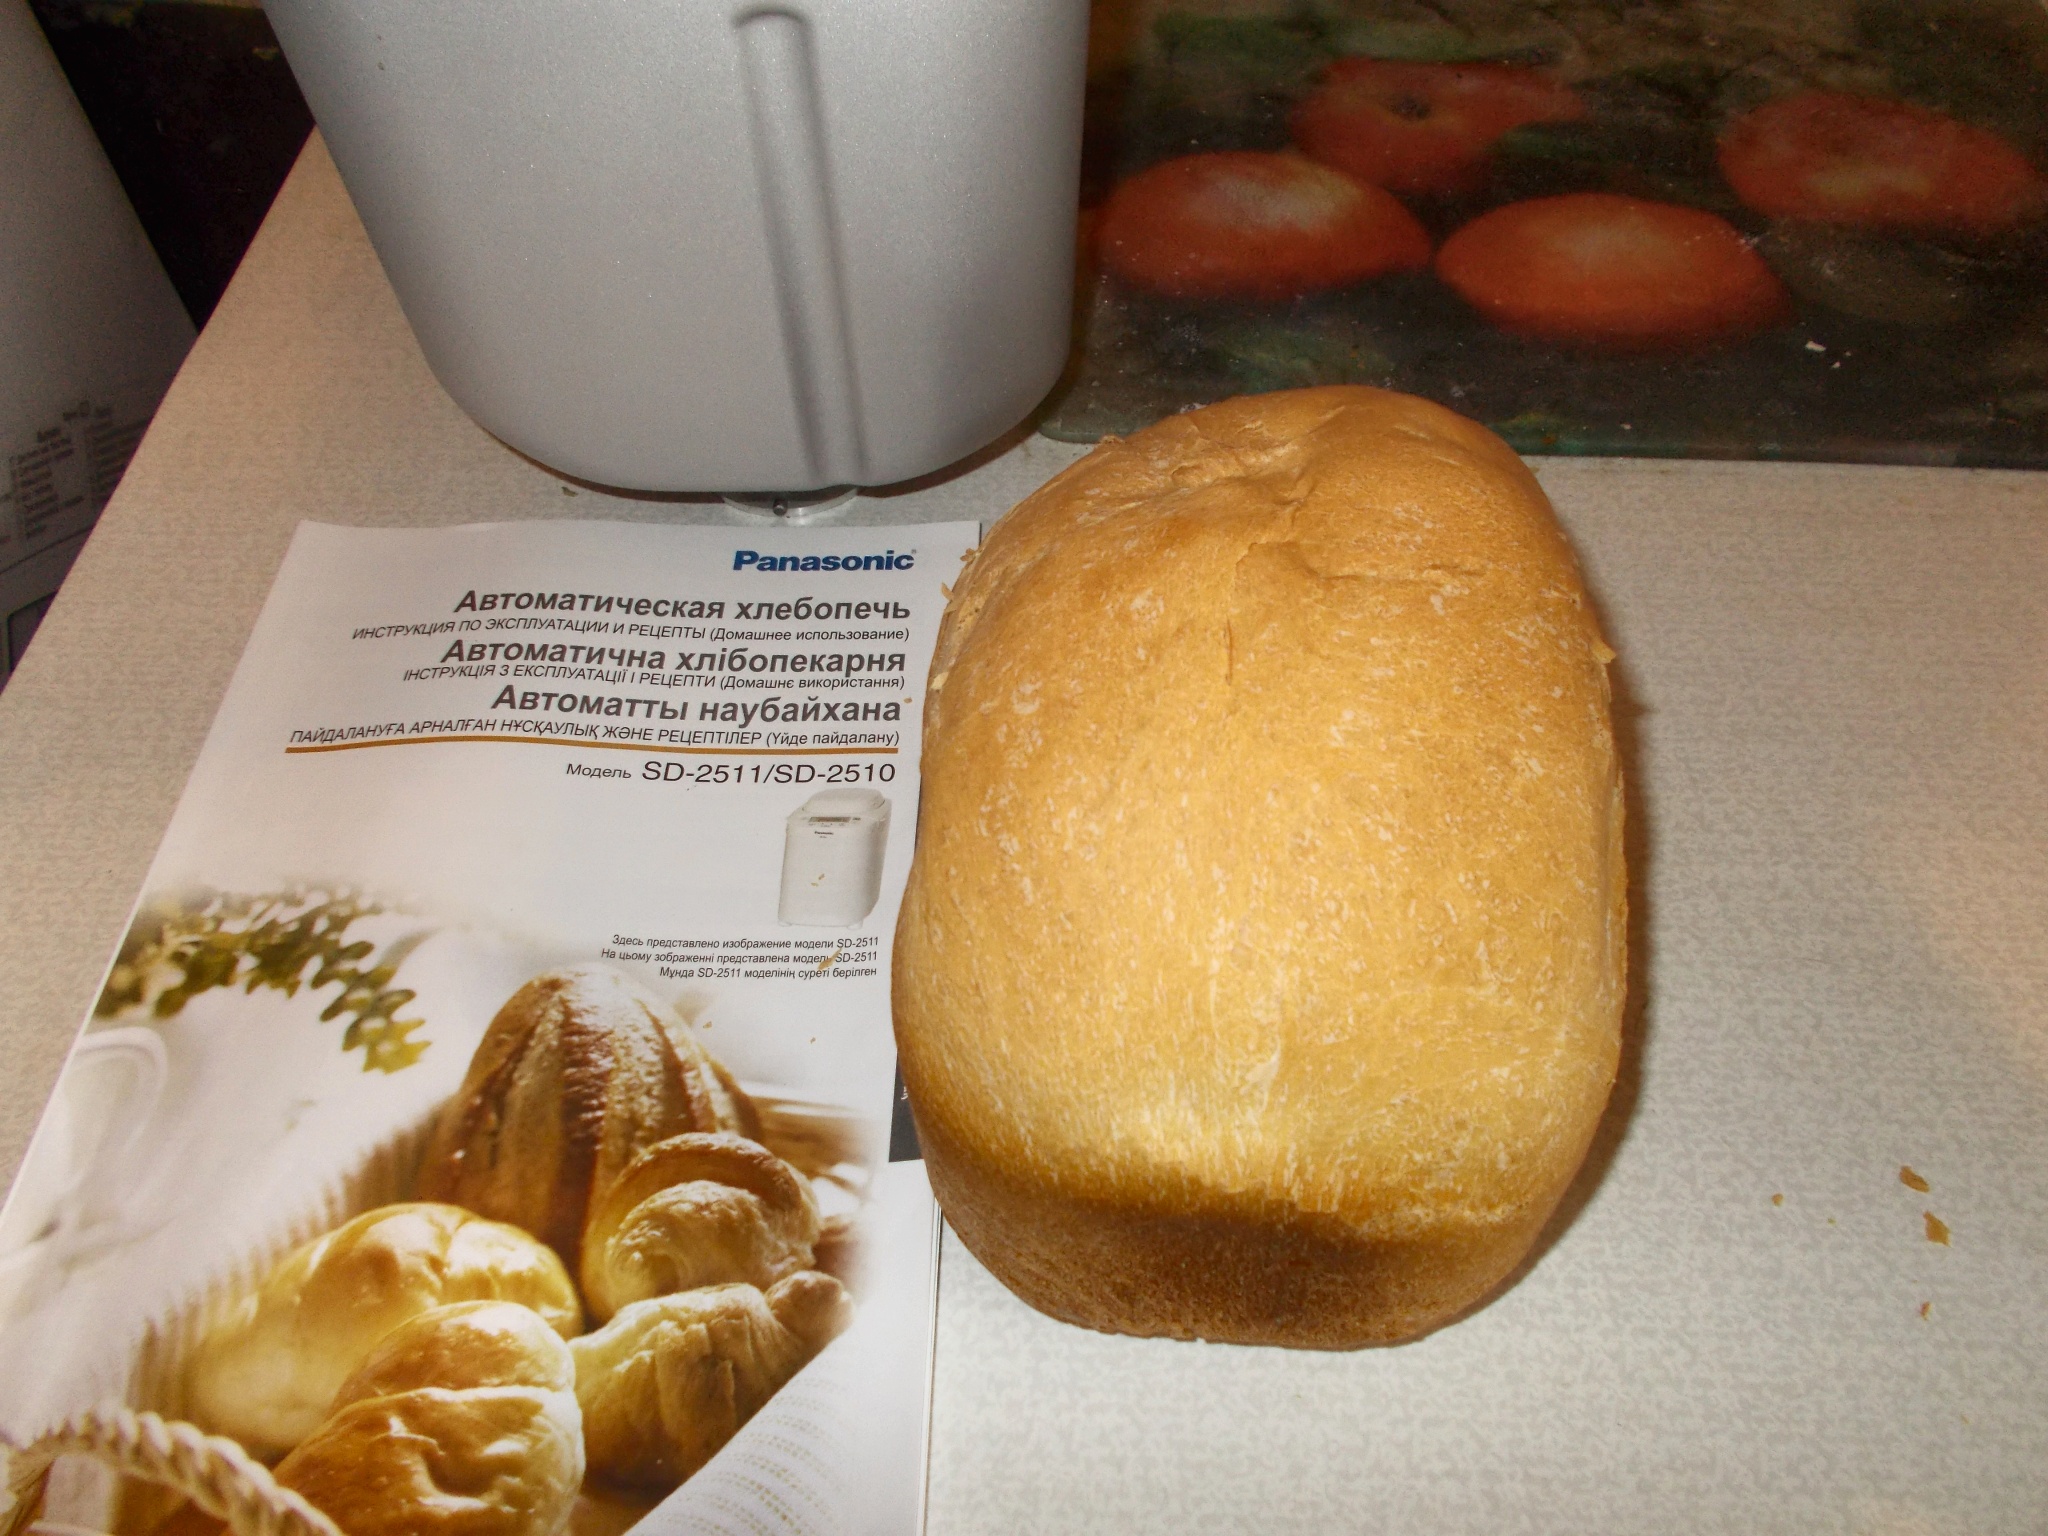 Рецепт хлеб panasonic. Panasonic хлебопечка рецепты SD 2510. Хлеб в хлебопечке Панасоник. Рецепт хлеба в хлебопечке Панасоник. Вес буханки хлеба из хлебопечки.